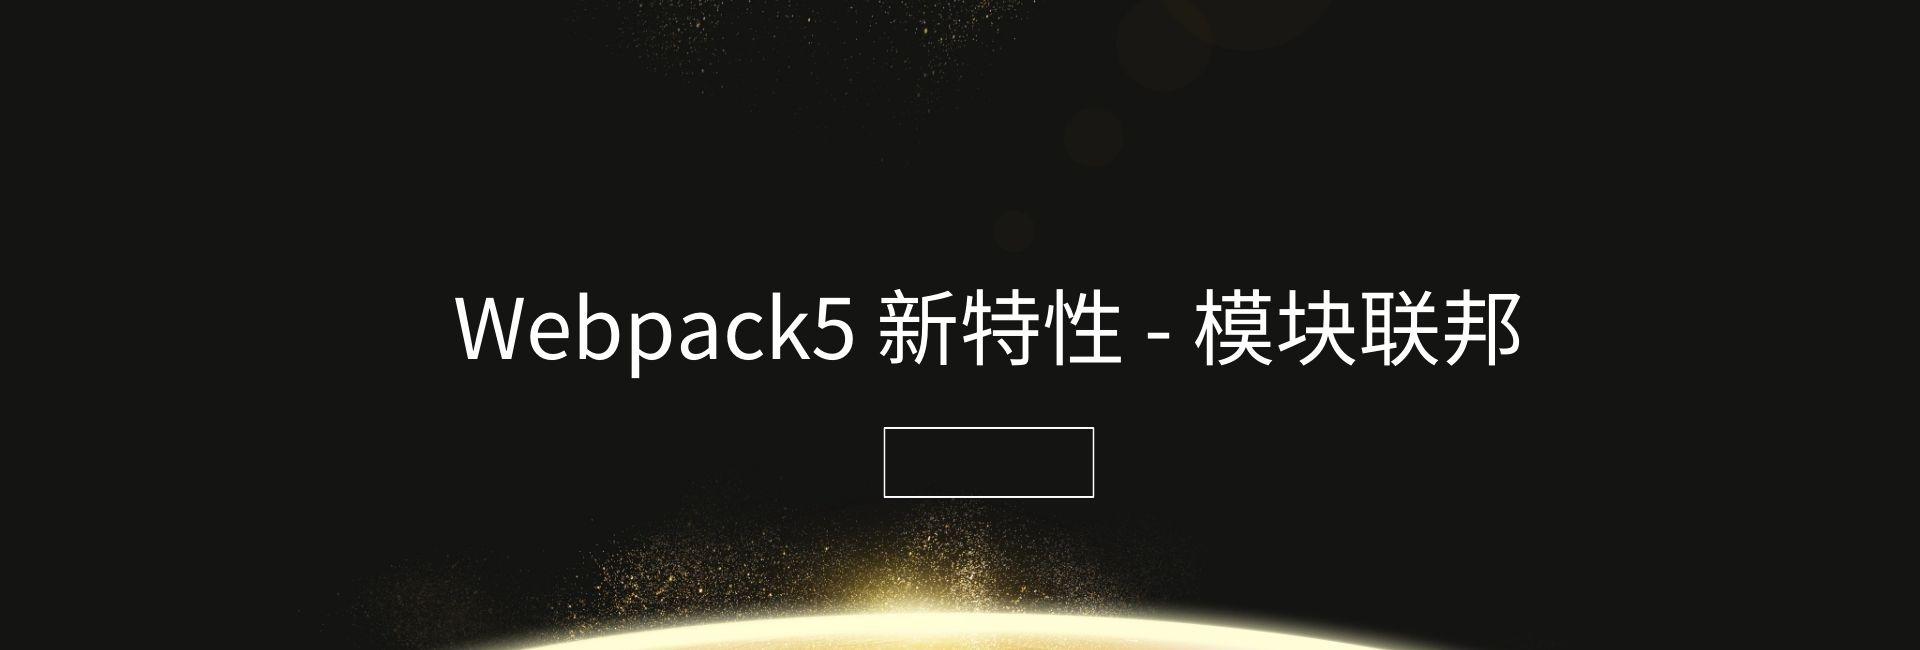 精读《Webpack5 新特性 - 模块联邦》